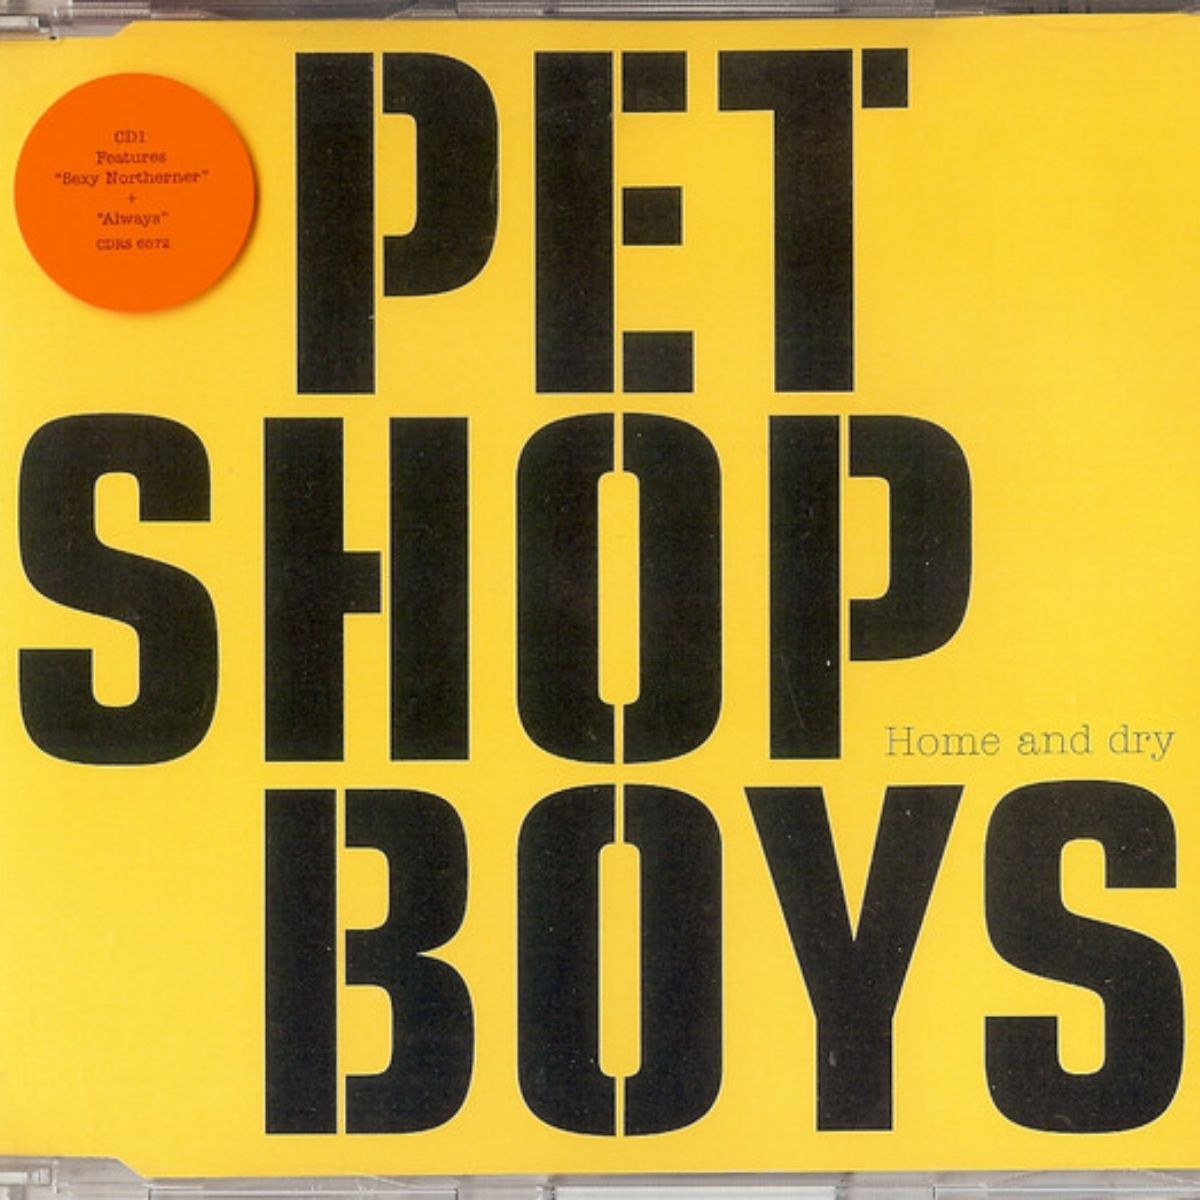 Arte de la portada del single "Home and Dry" de los Pet Shop Boys 